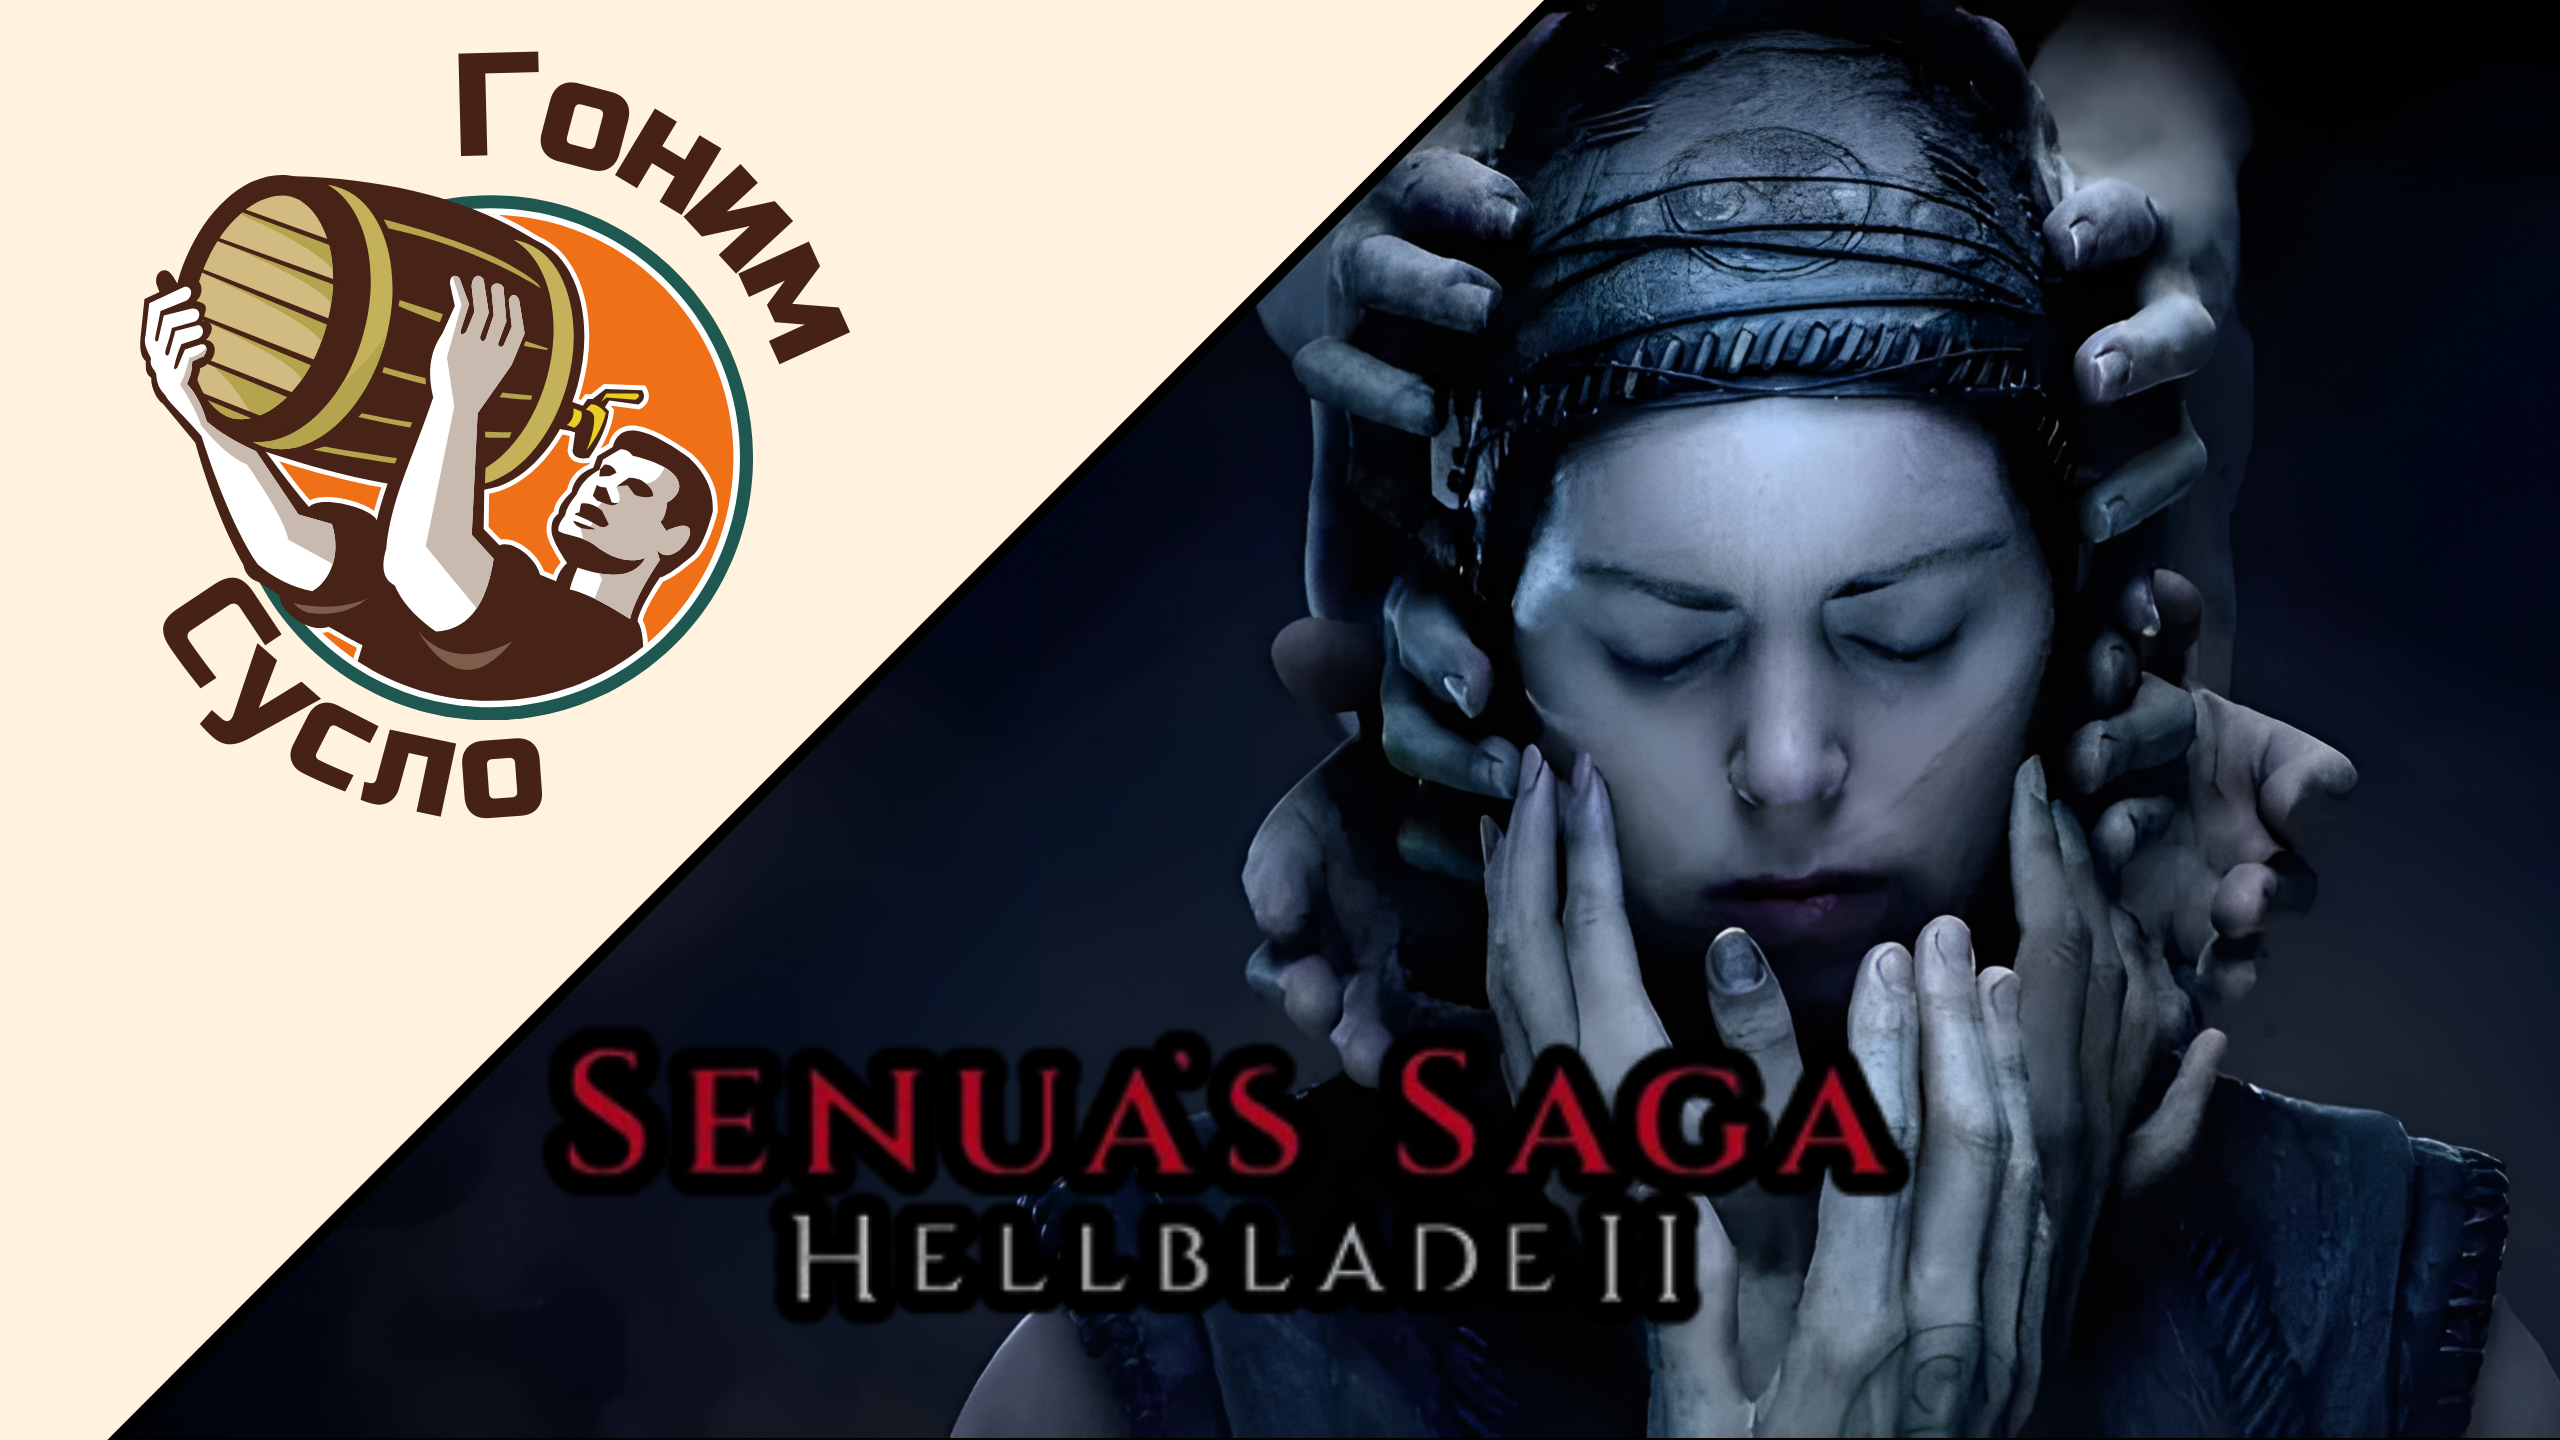 «Новые голоса в голове» - свежая «Hellblade 2» / Гоним Сусло #9.2